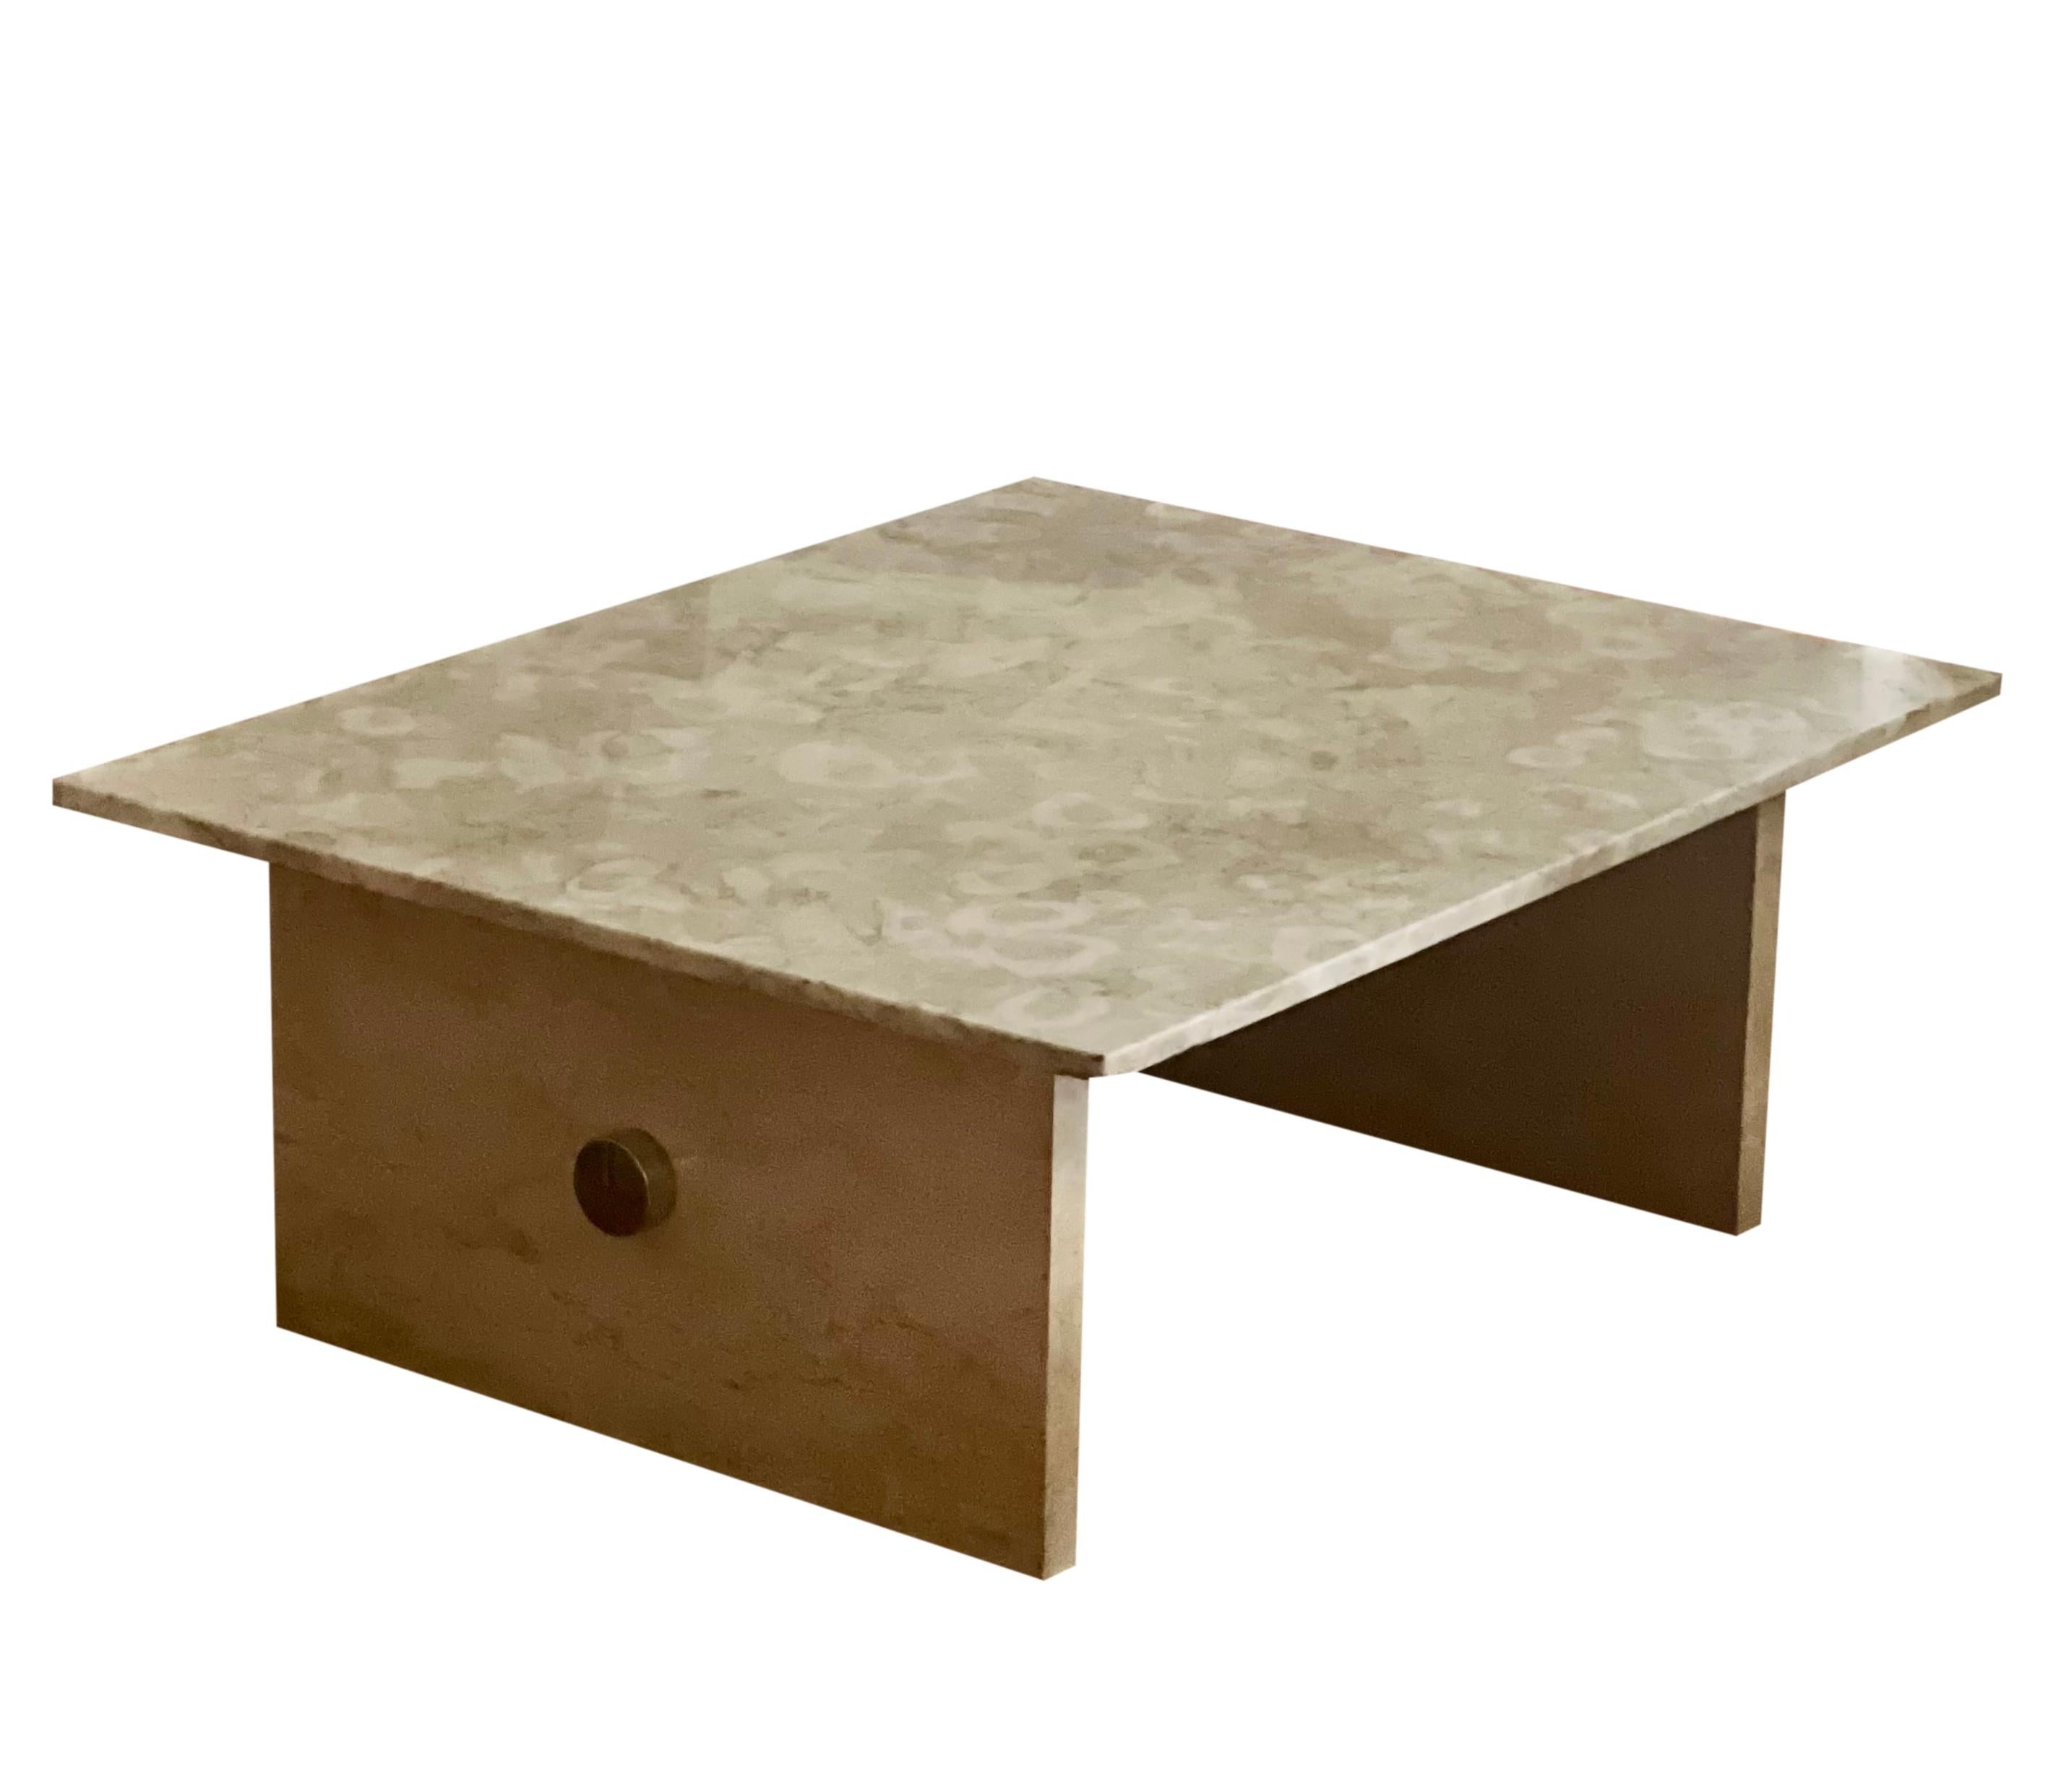 Exceptionnelle table basse moderne en marbre massif et chrome.

Le design épuré présente deux socles rectangulaires reliés par une barre en chrome poli de 3